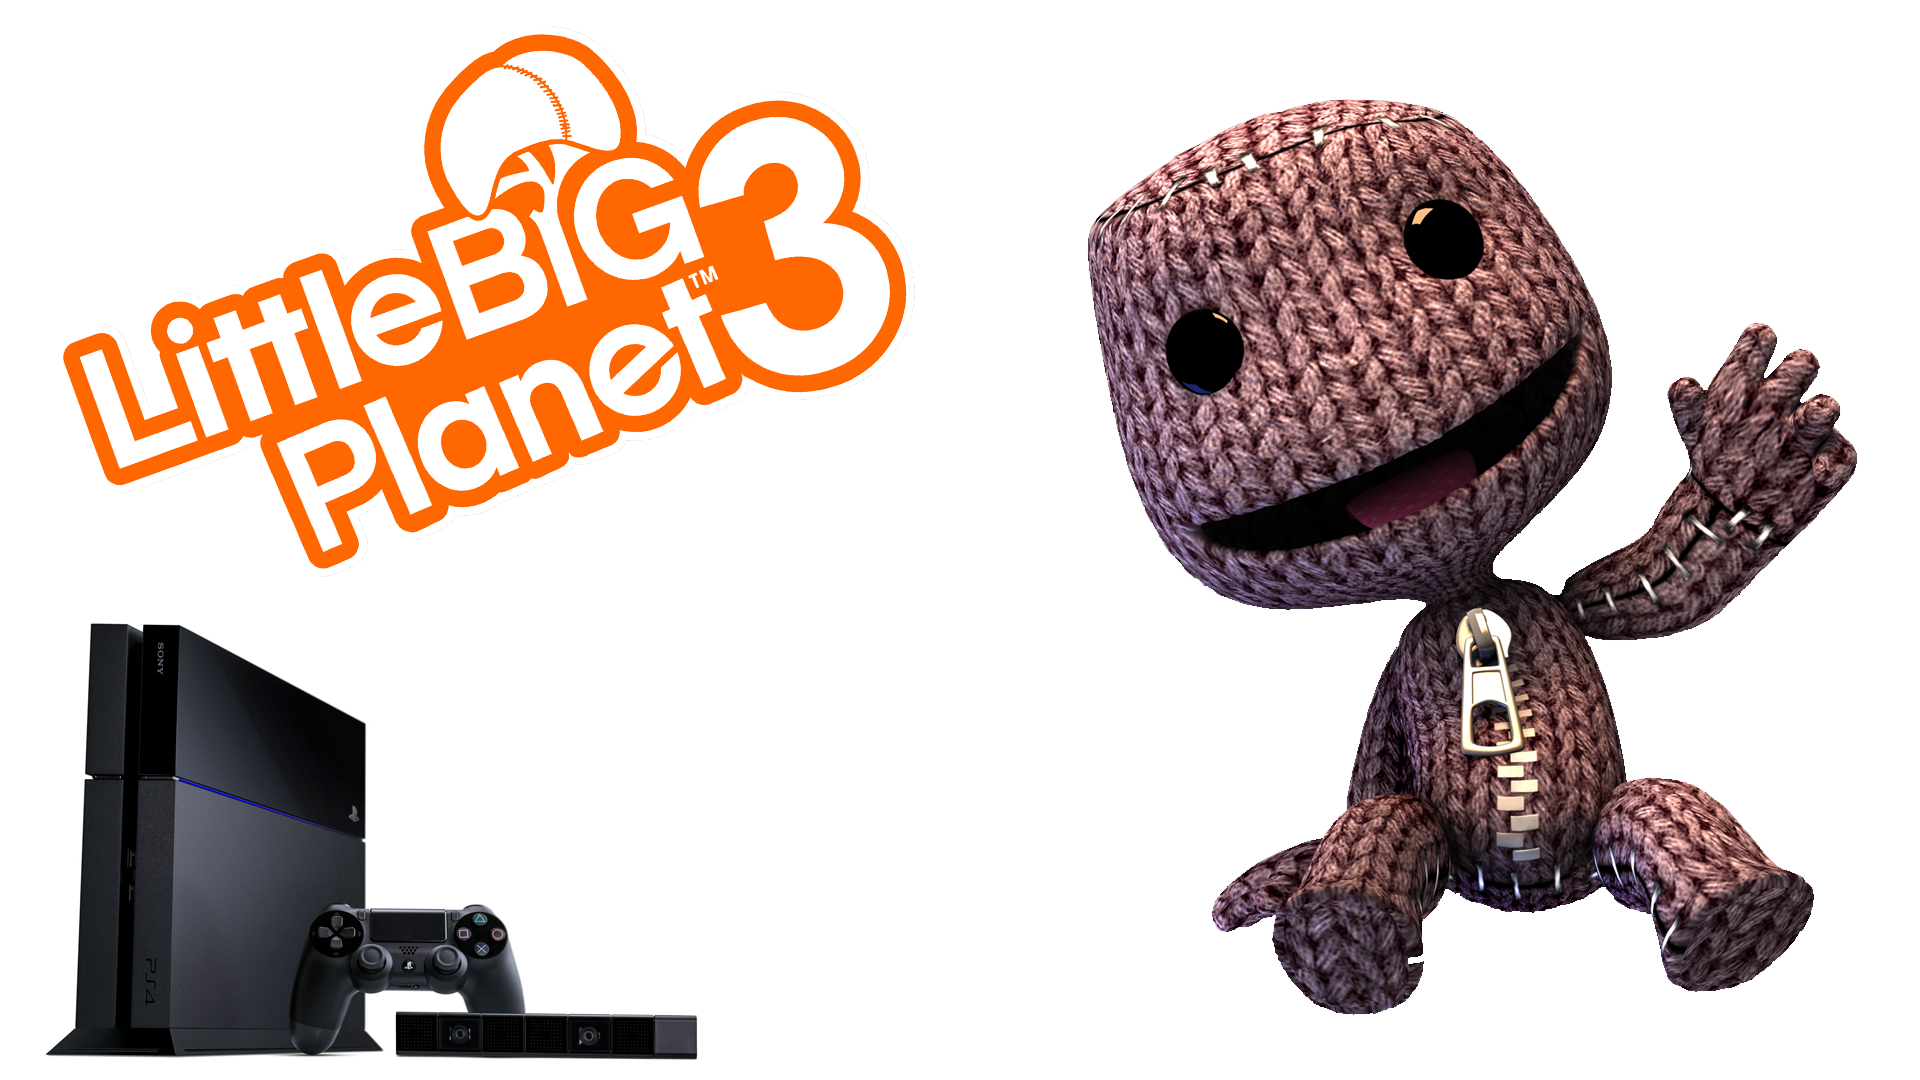 LittleBigPlanet 3 PS4 Wallpaper